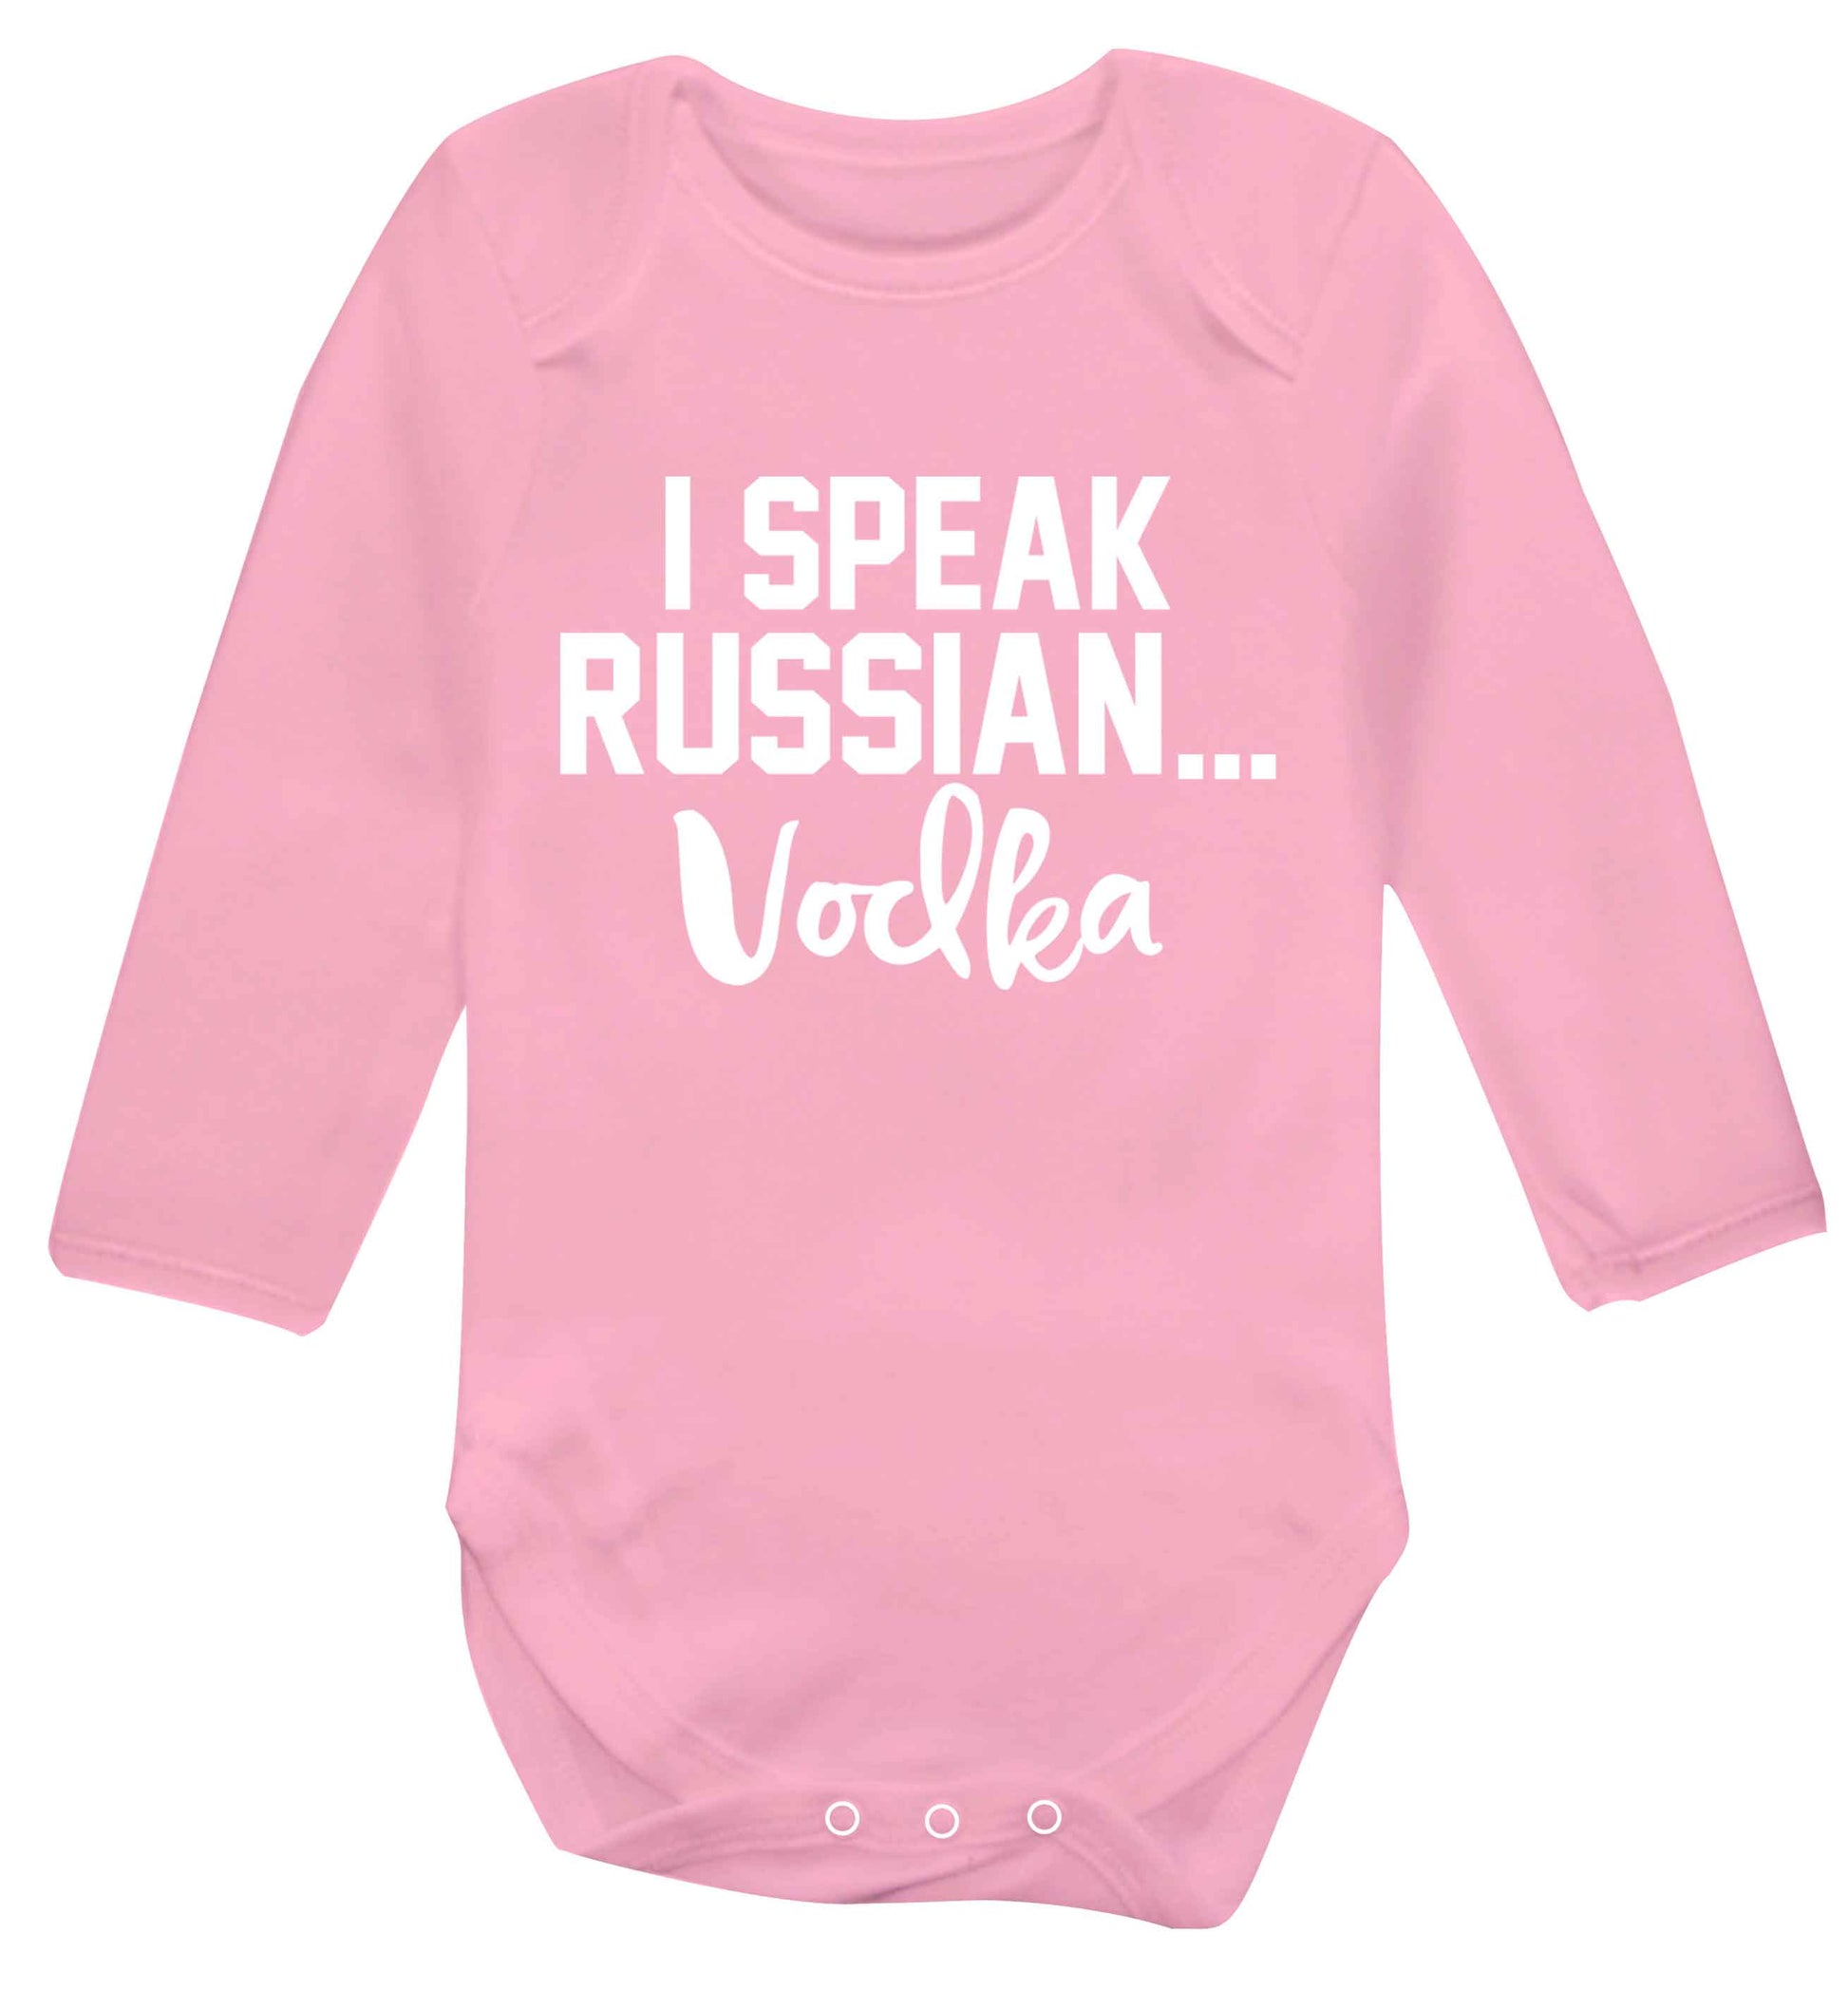 I speak russian...vodka Baby Vest long sleeved pale pink 6-12 months